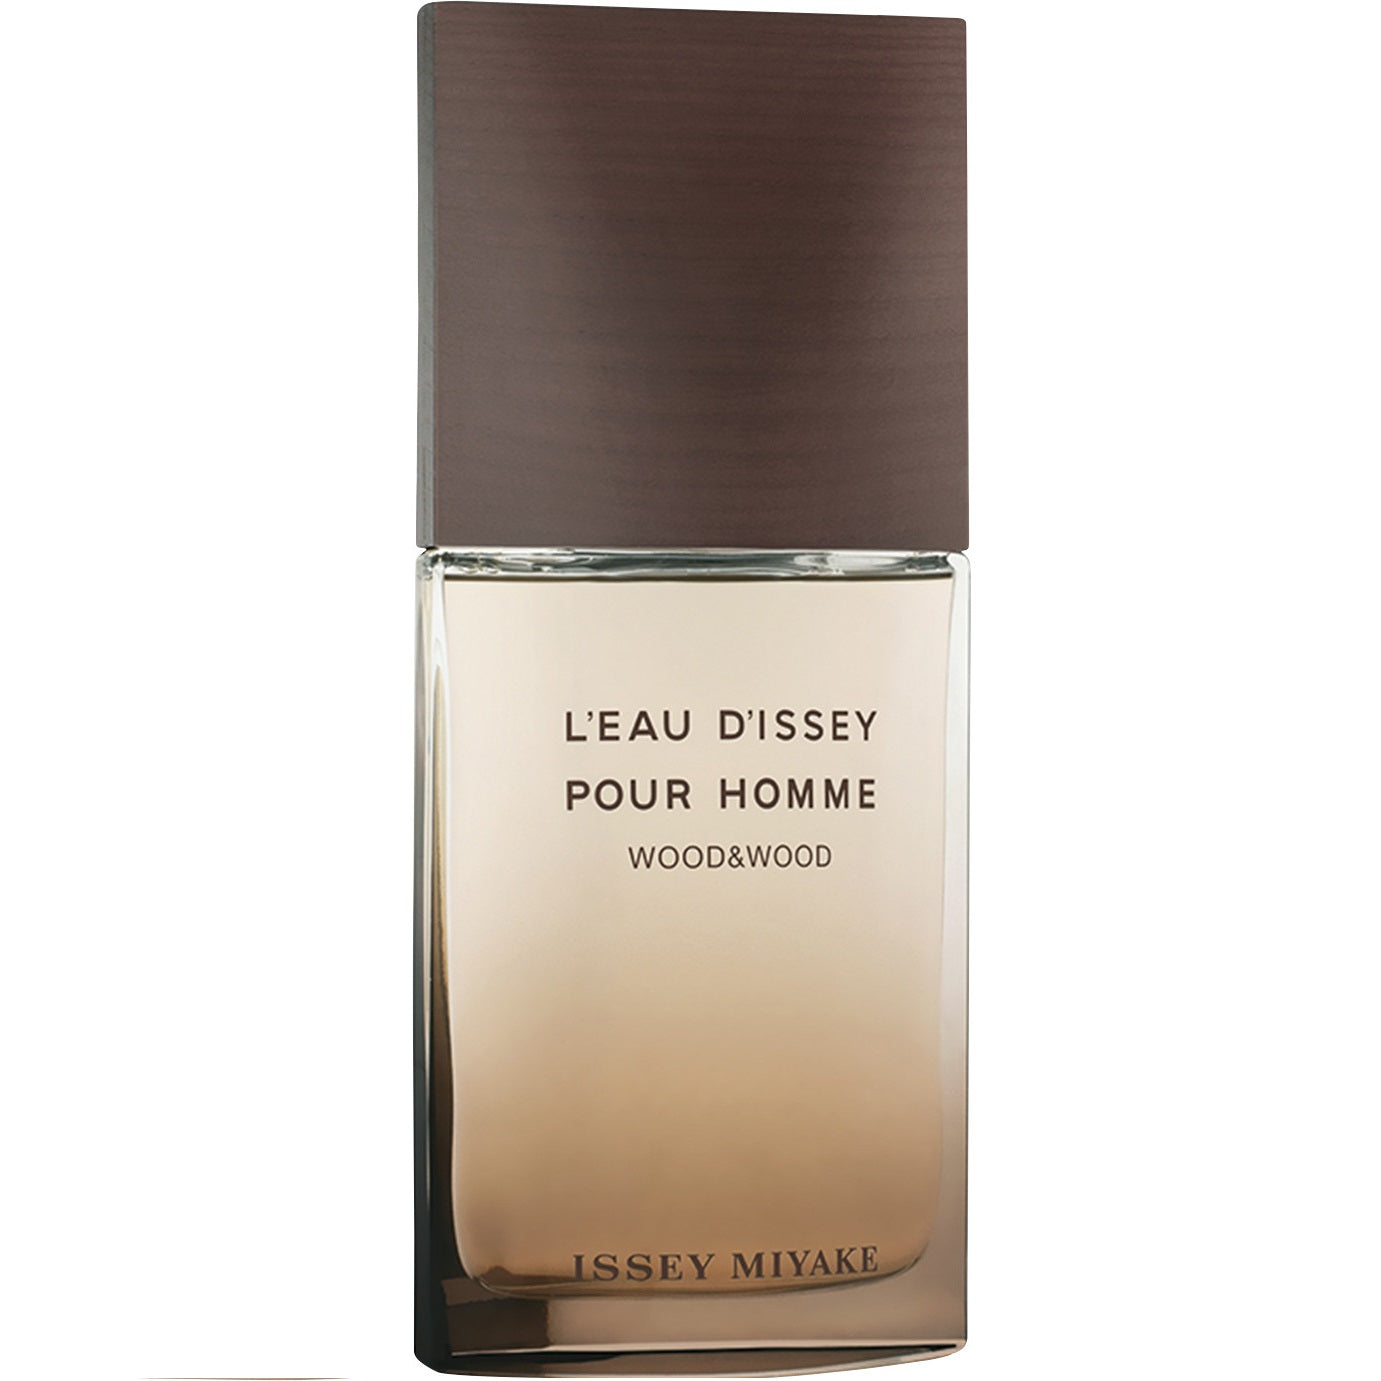 Issey Miyake L'Eau d'Issey Pour Homme Wood & Wood Eau de Parfum Intense Spray 50ml